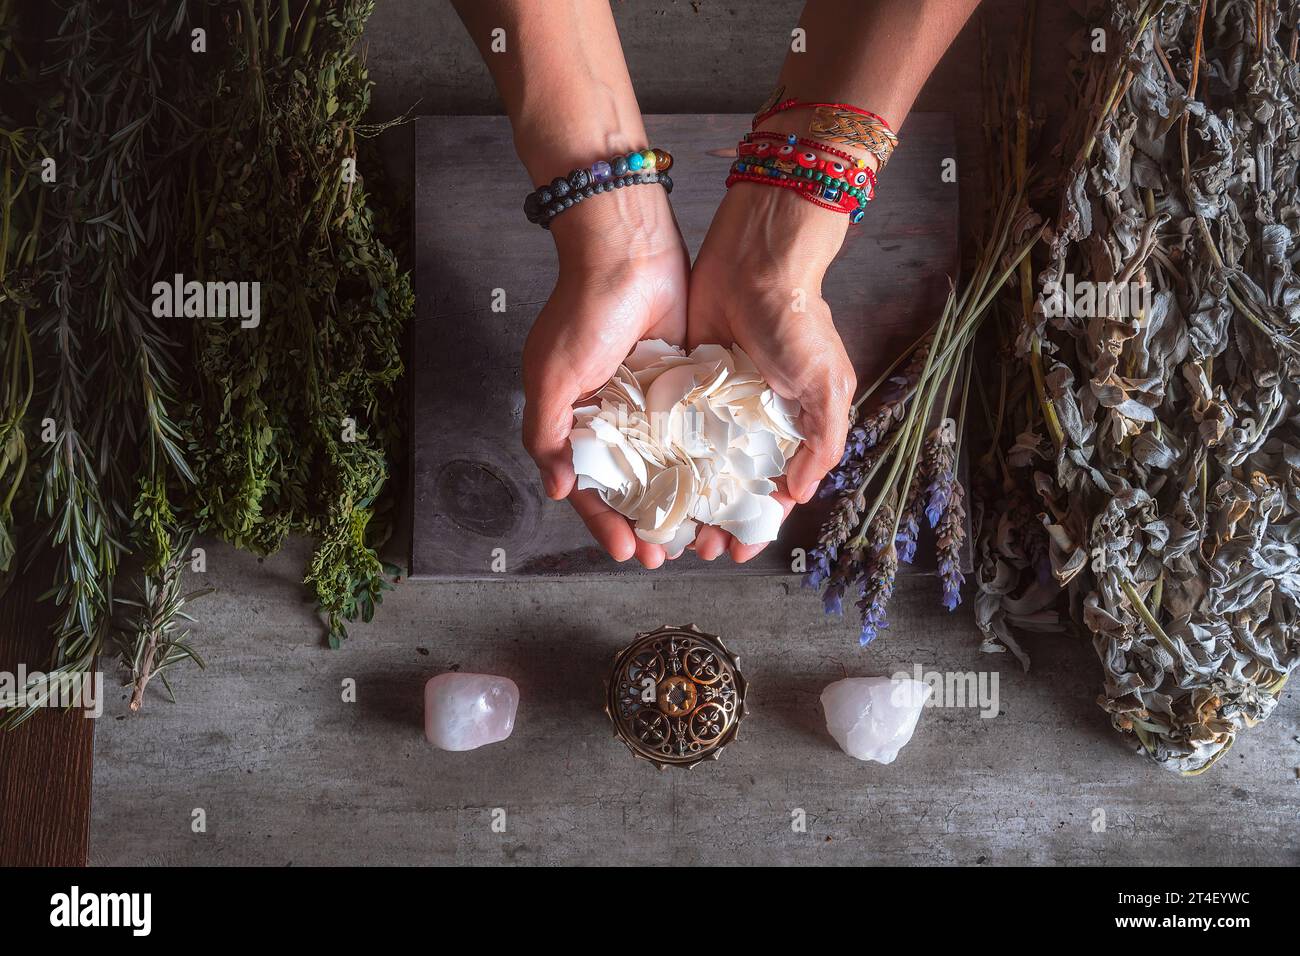 Frau, die Eierschalen mit den Händen hält, für spirituelle und traditionelle Rituale in Lateinamerika oder Mexiko Stockfoto